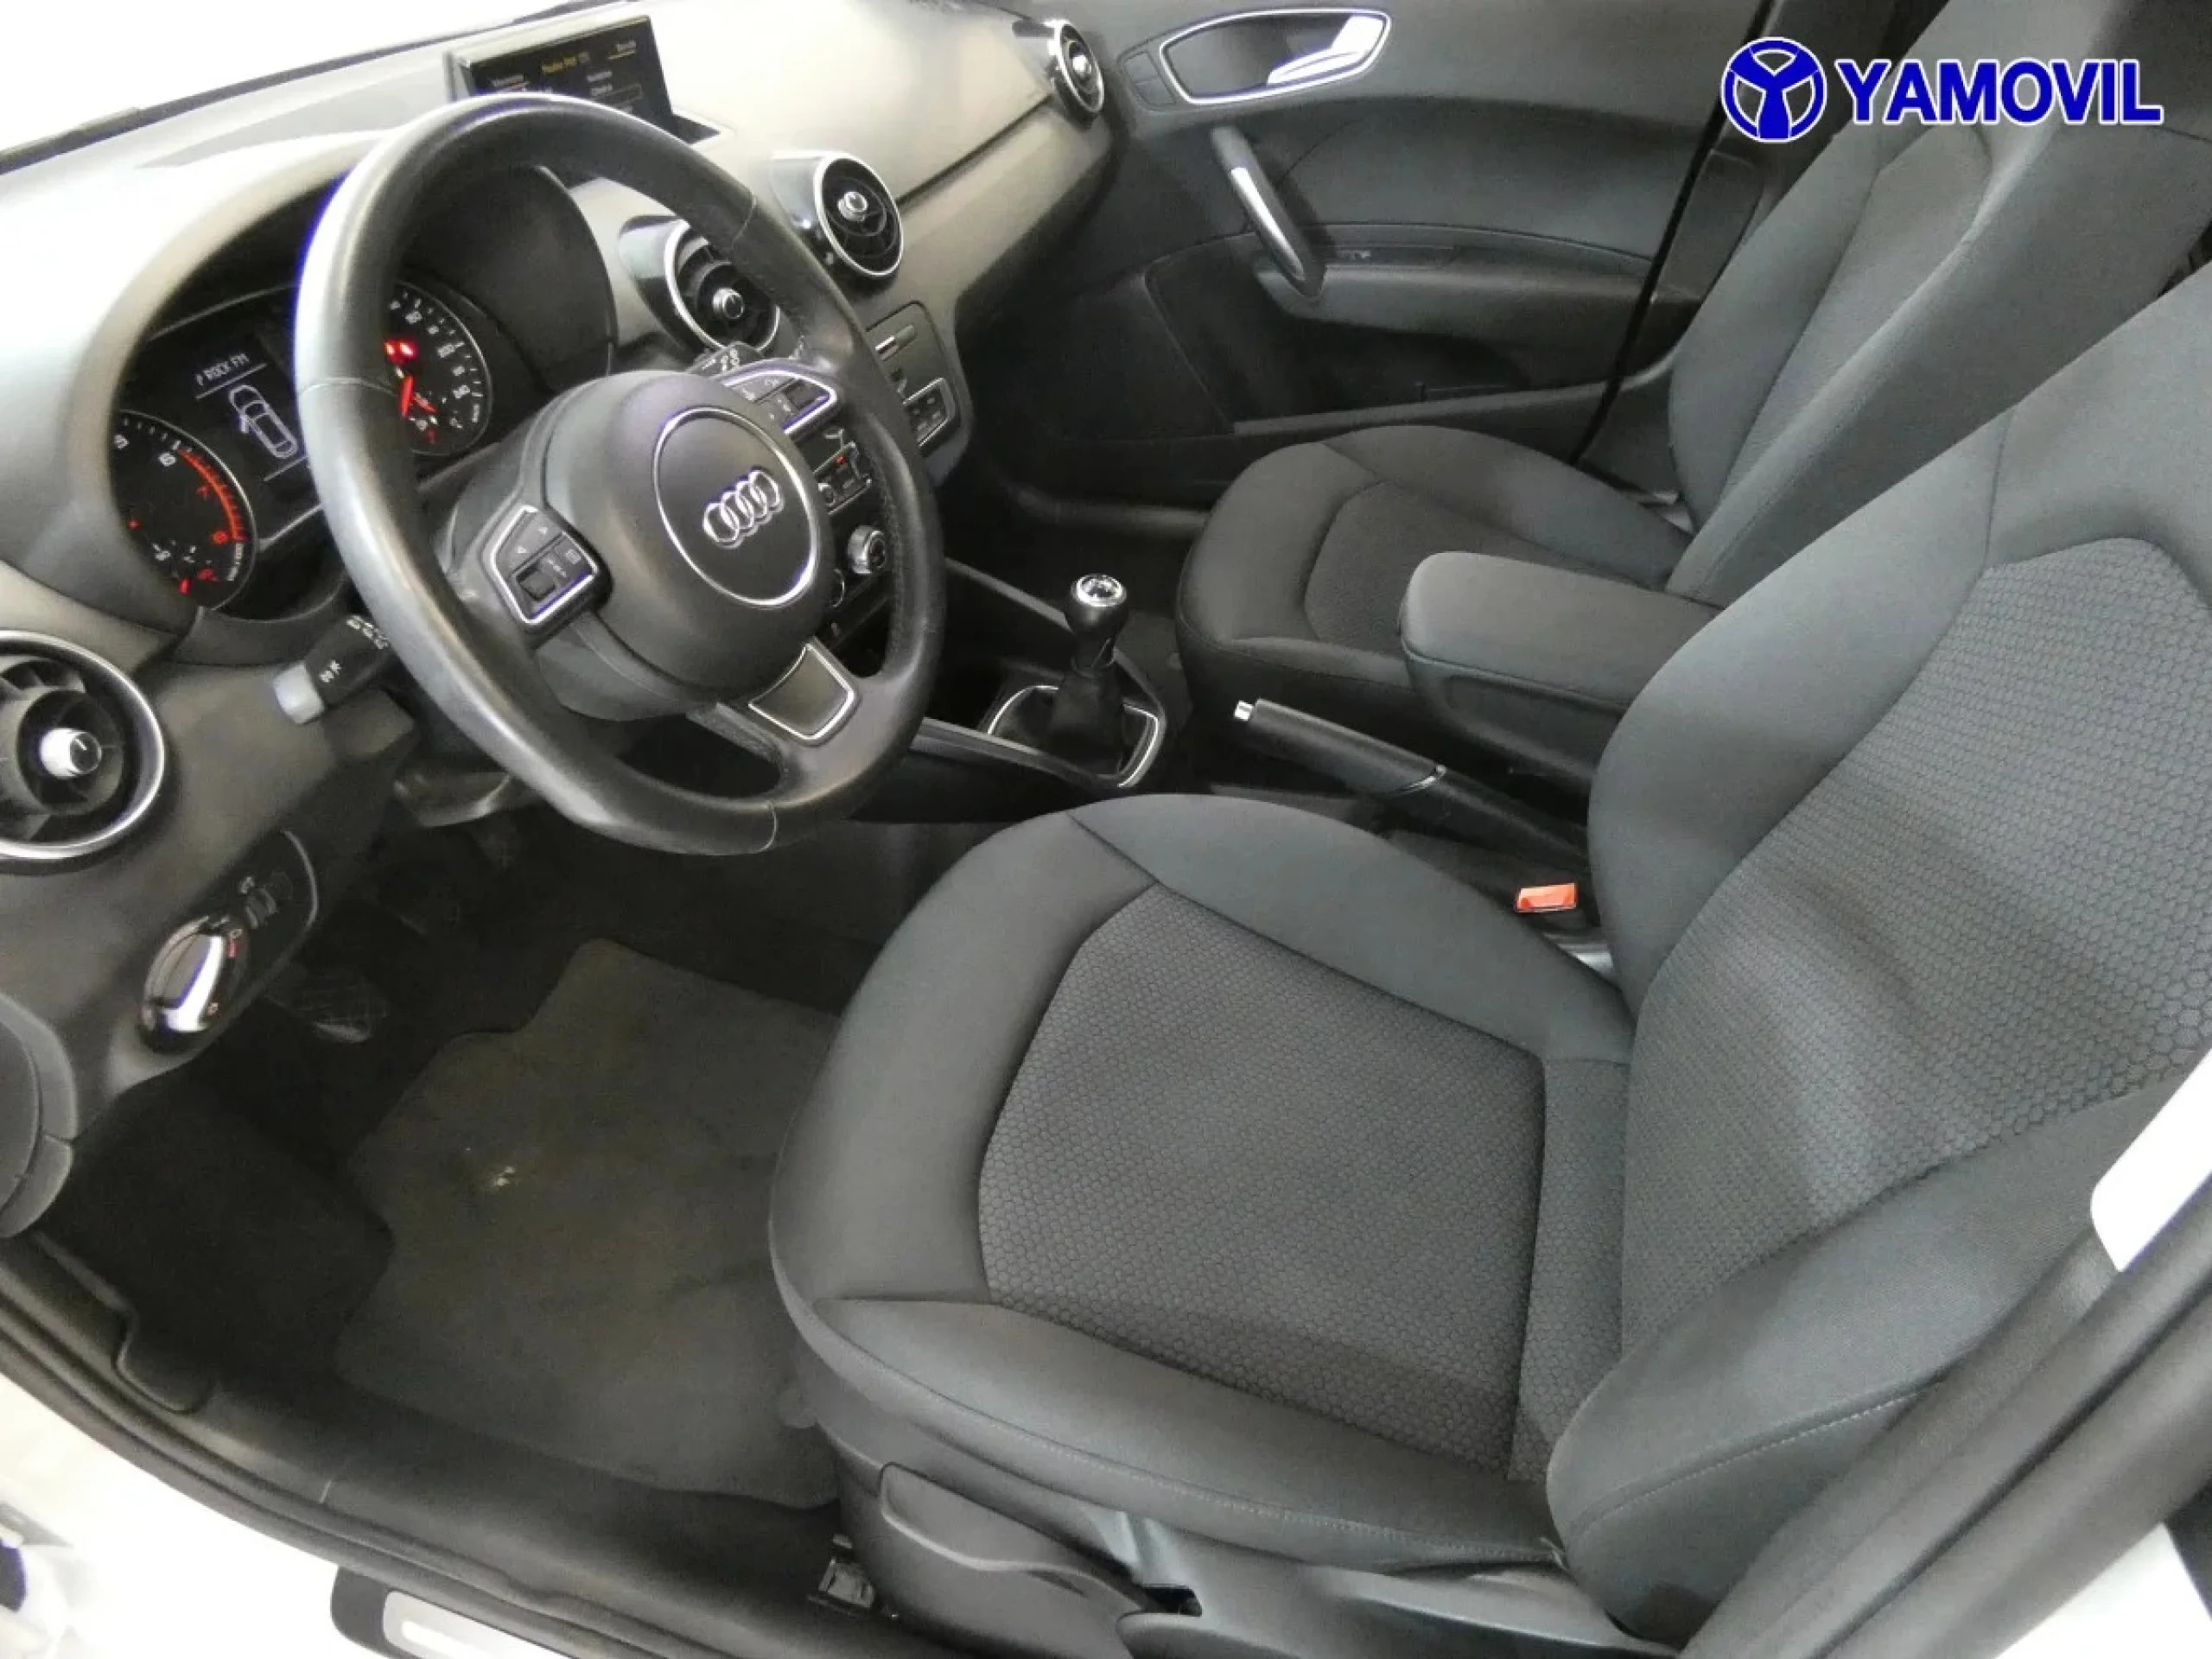 Audi A1 Sportback Adrenalin 1.4 TFSI 92 kW (125 CV) - Foto 14